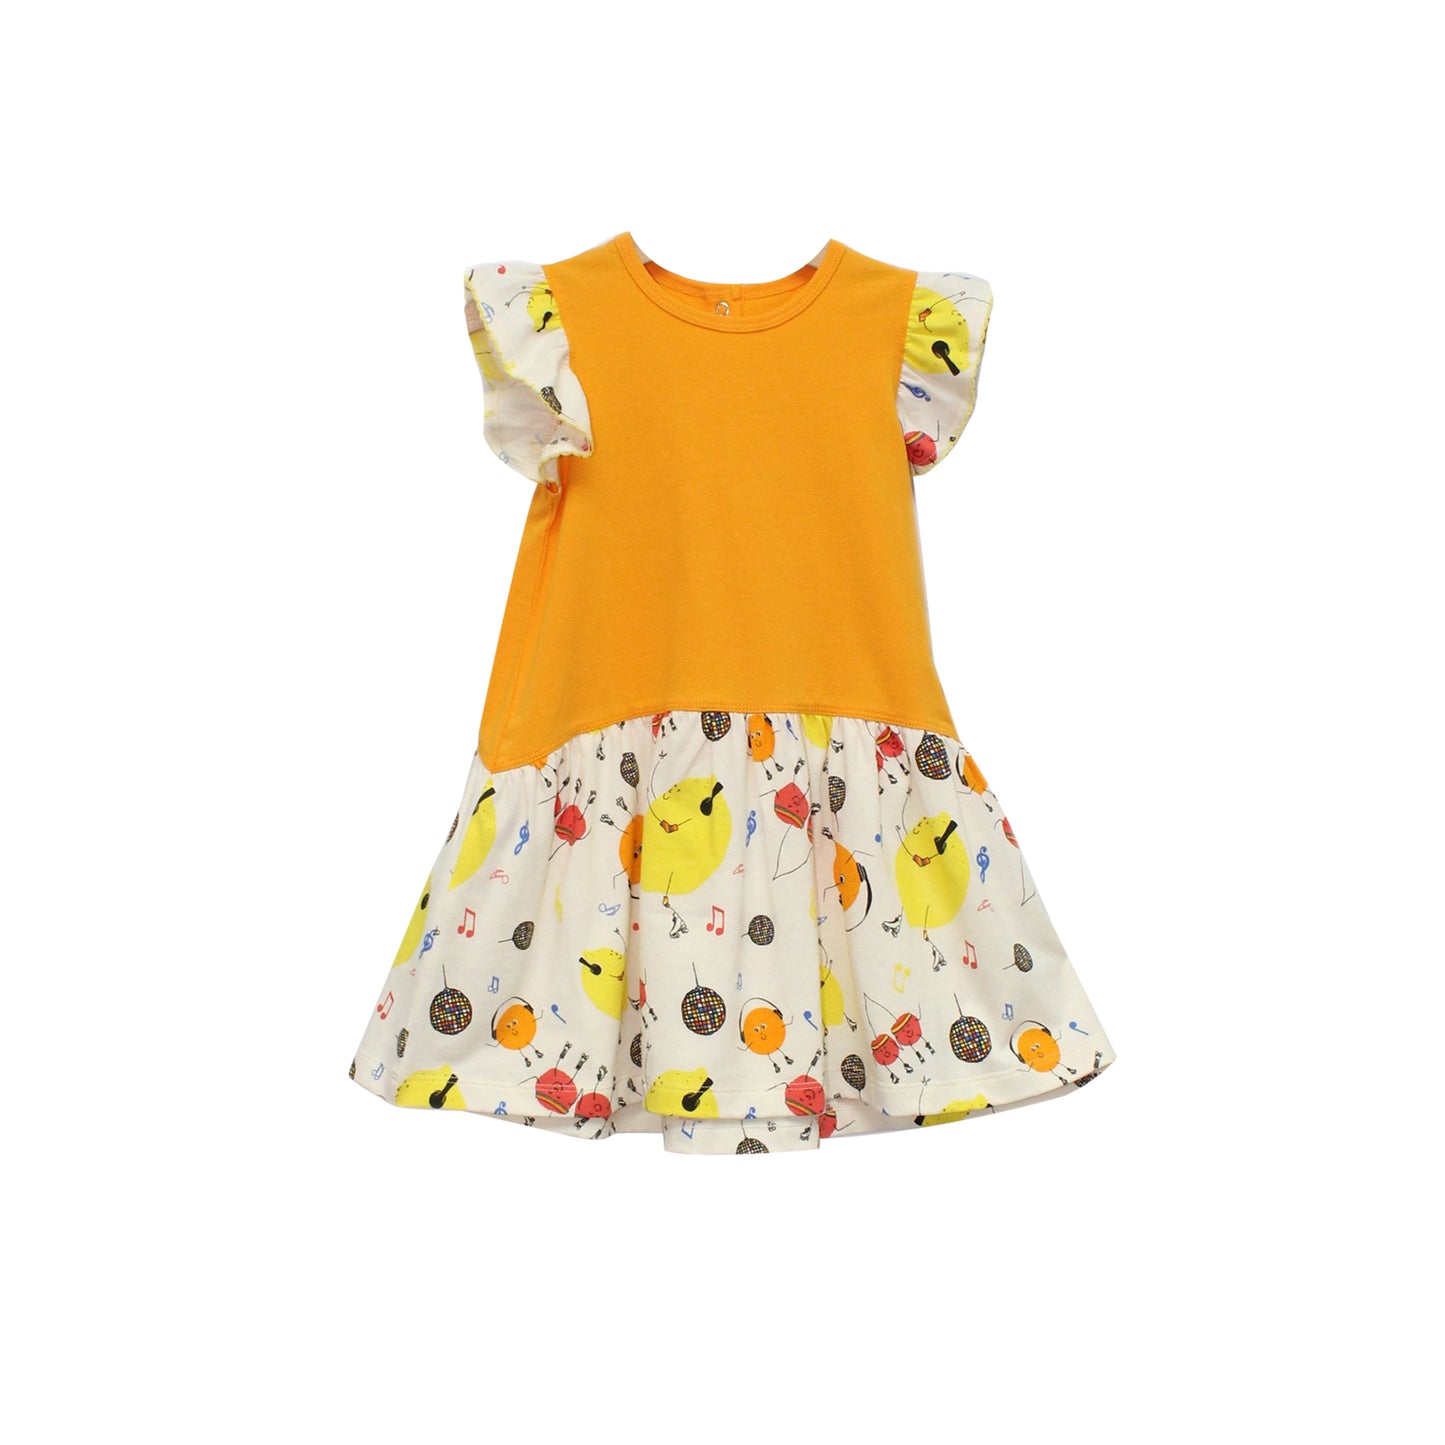 女童裝有機棉 - 黃色拼水果派對印花連身裙